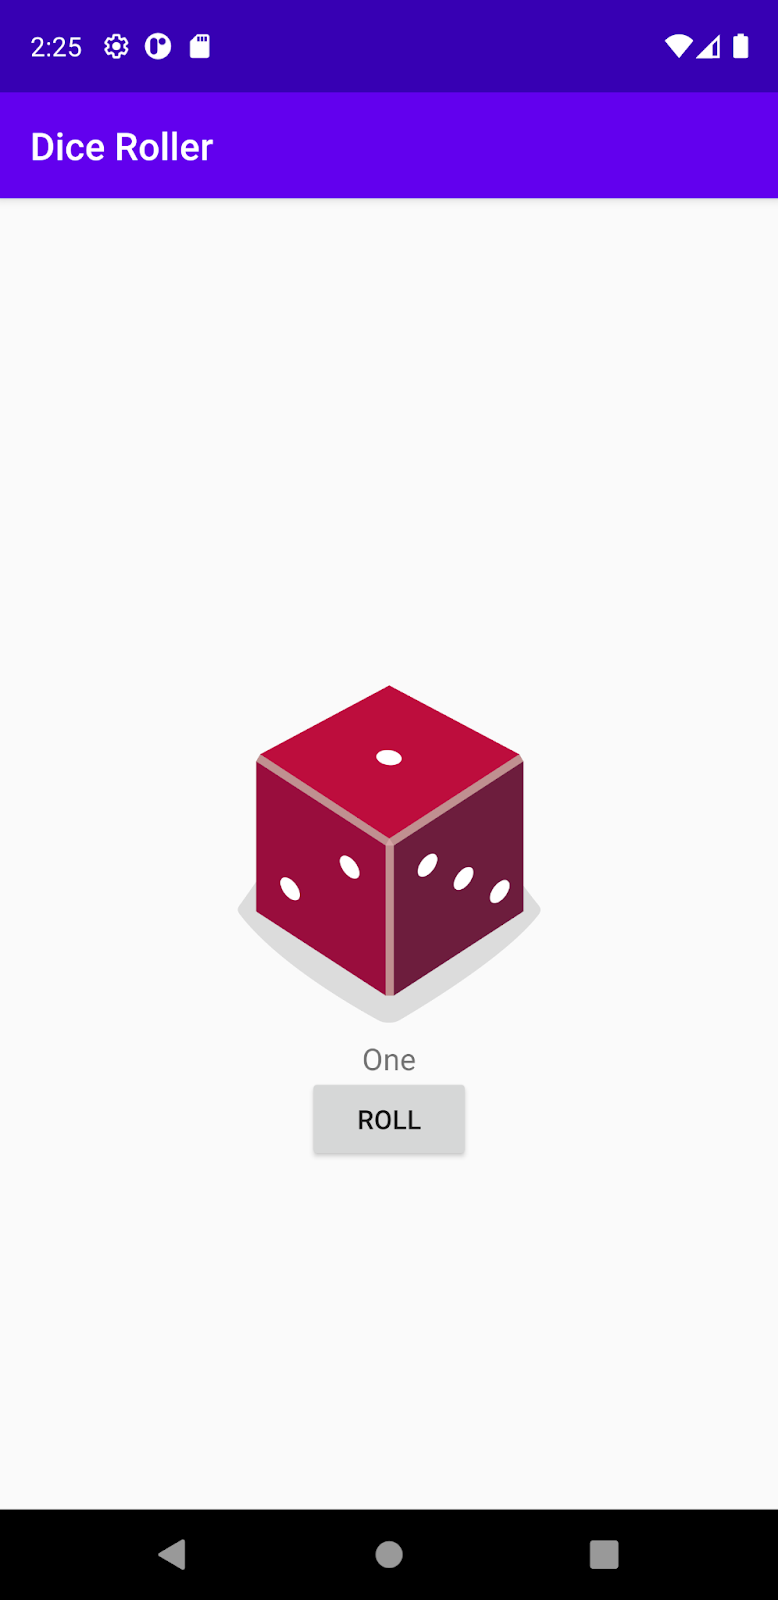 App de Dice Roller con caja dinámica